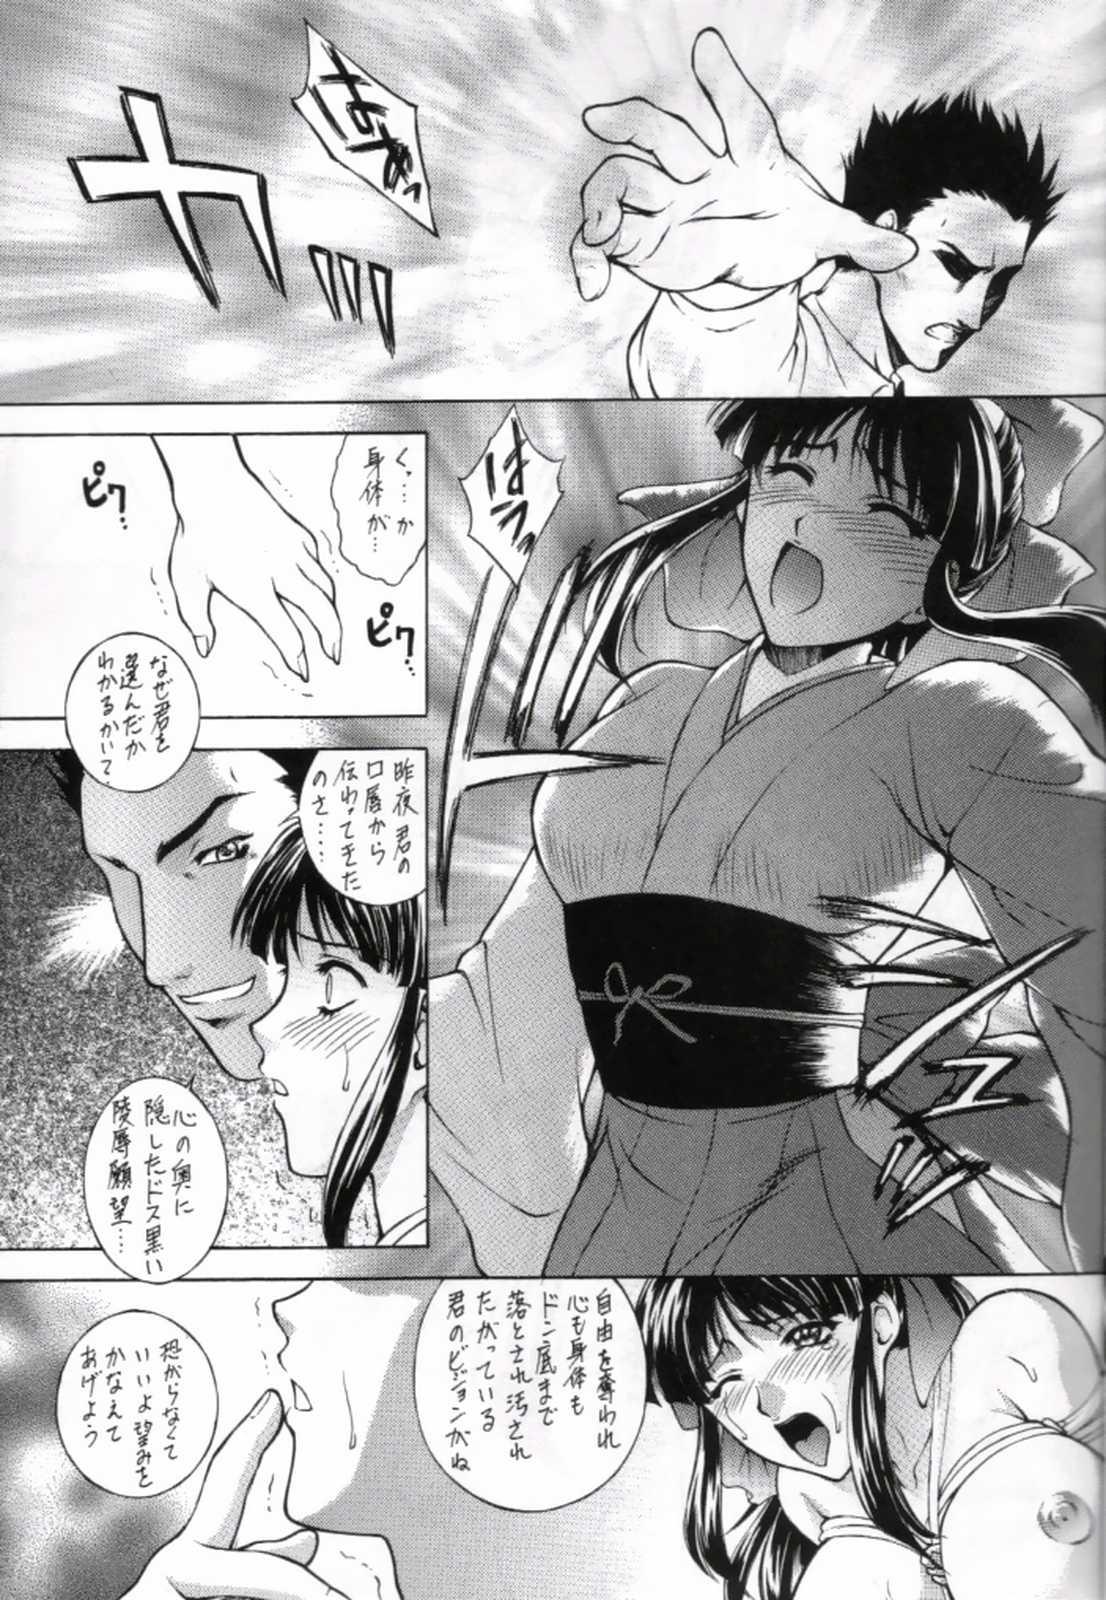 Chibola HAPPY GO LUCKY 10 - Sakura taisen Analfucking - Page 12